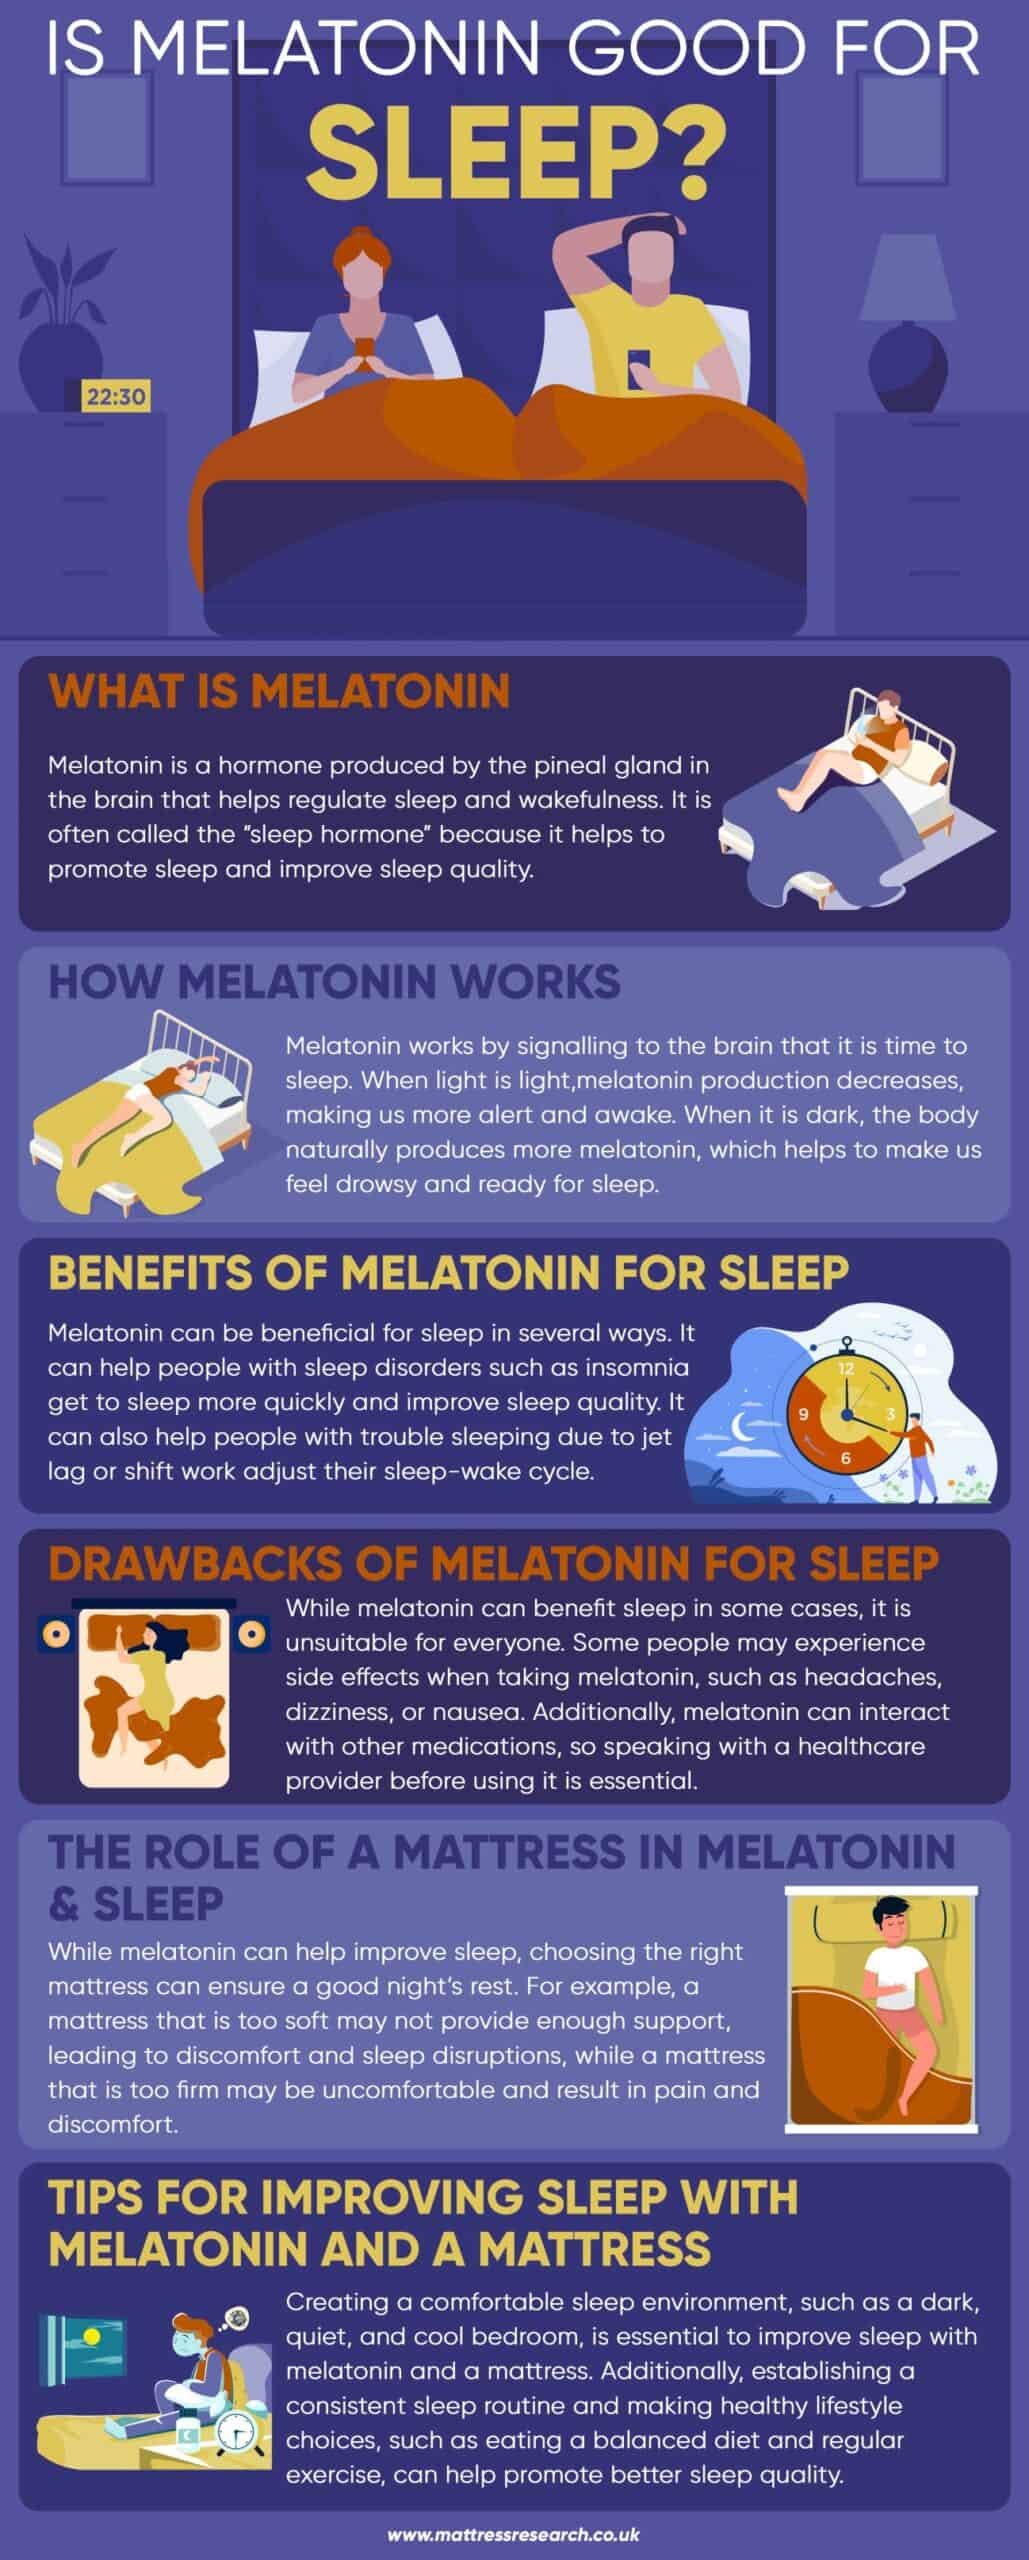 Is melatonin good for sleep?